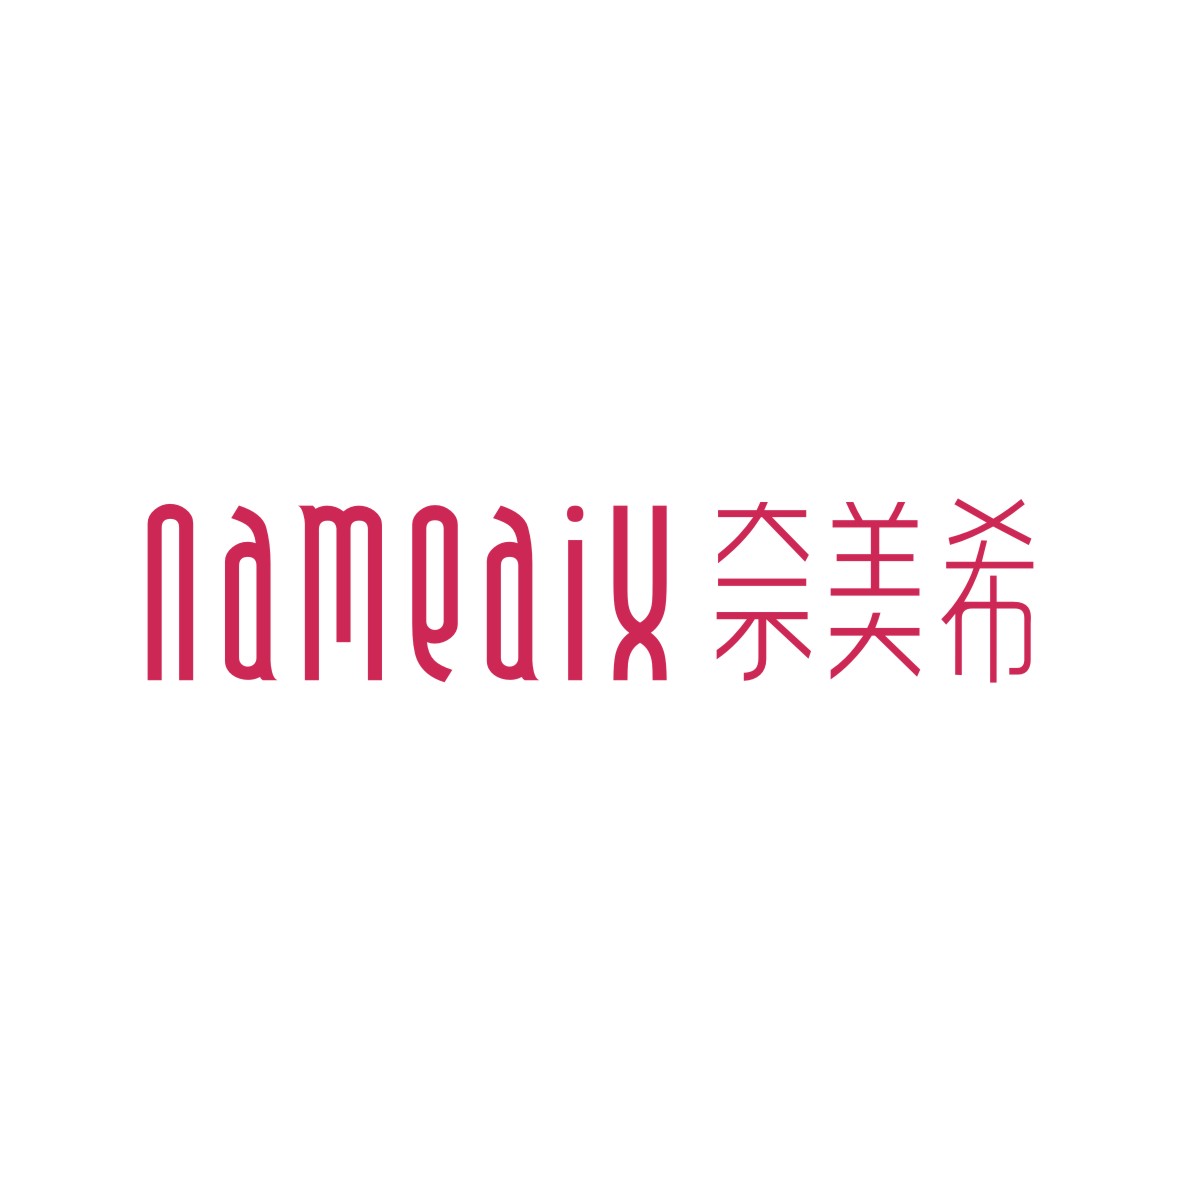 广州品翰文化发展有限公司商标奈美希 NAMEAIX（25类）多少钱？